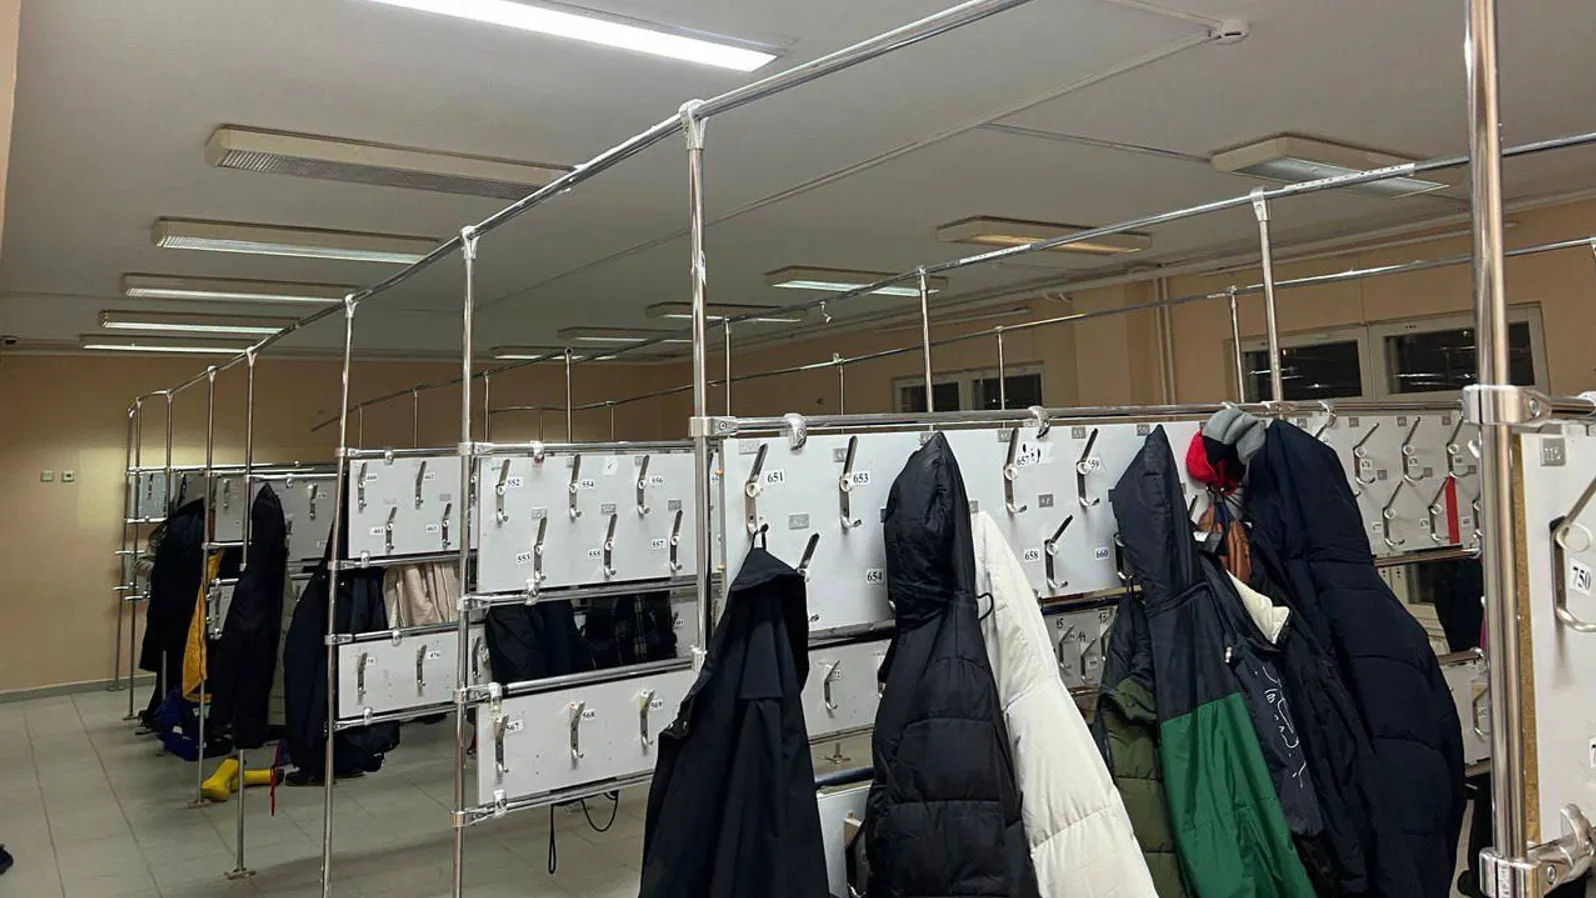 В салехардской школе решили проблему с перегруженностью гардероба. Фото: t.me/directorvteme/11